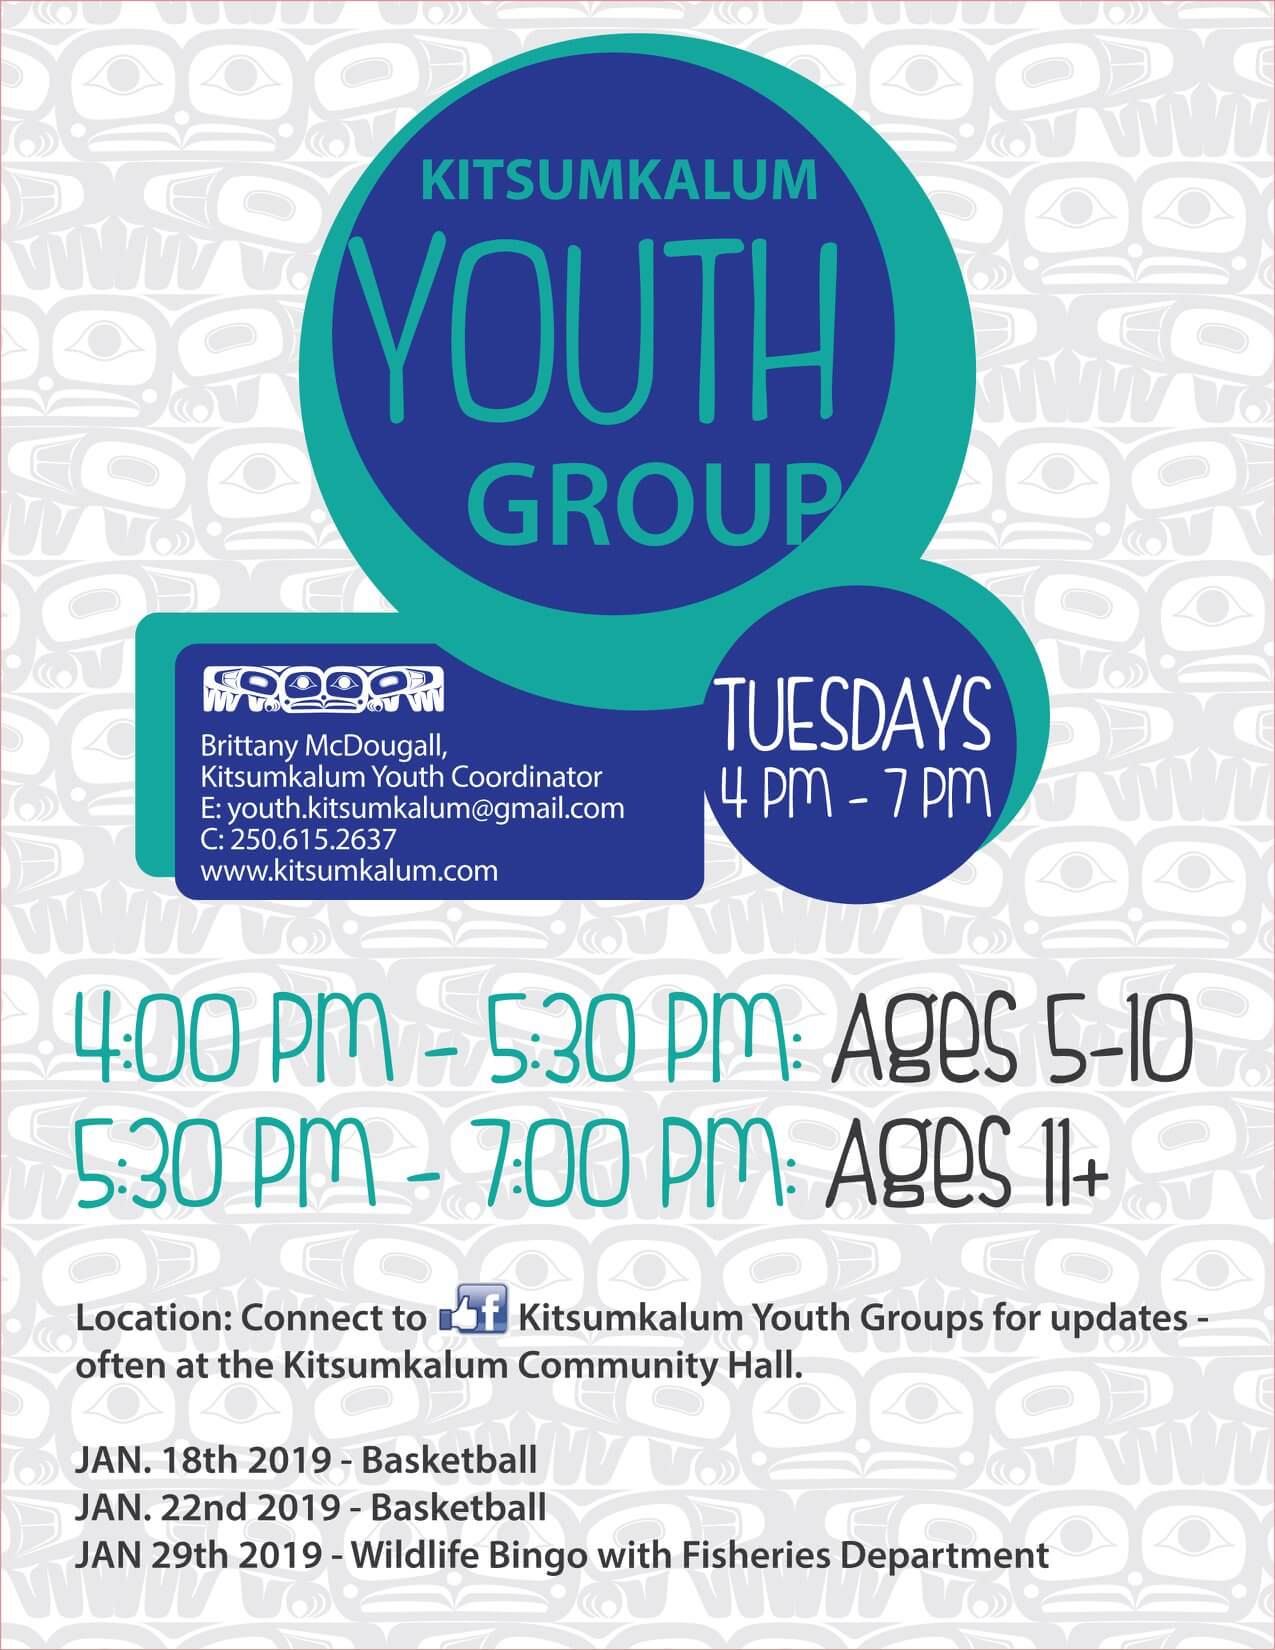 Kitsumkalum Youth Group – Tuesdays